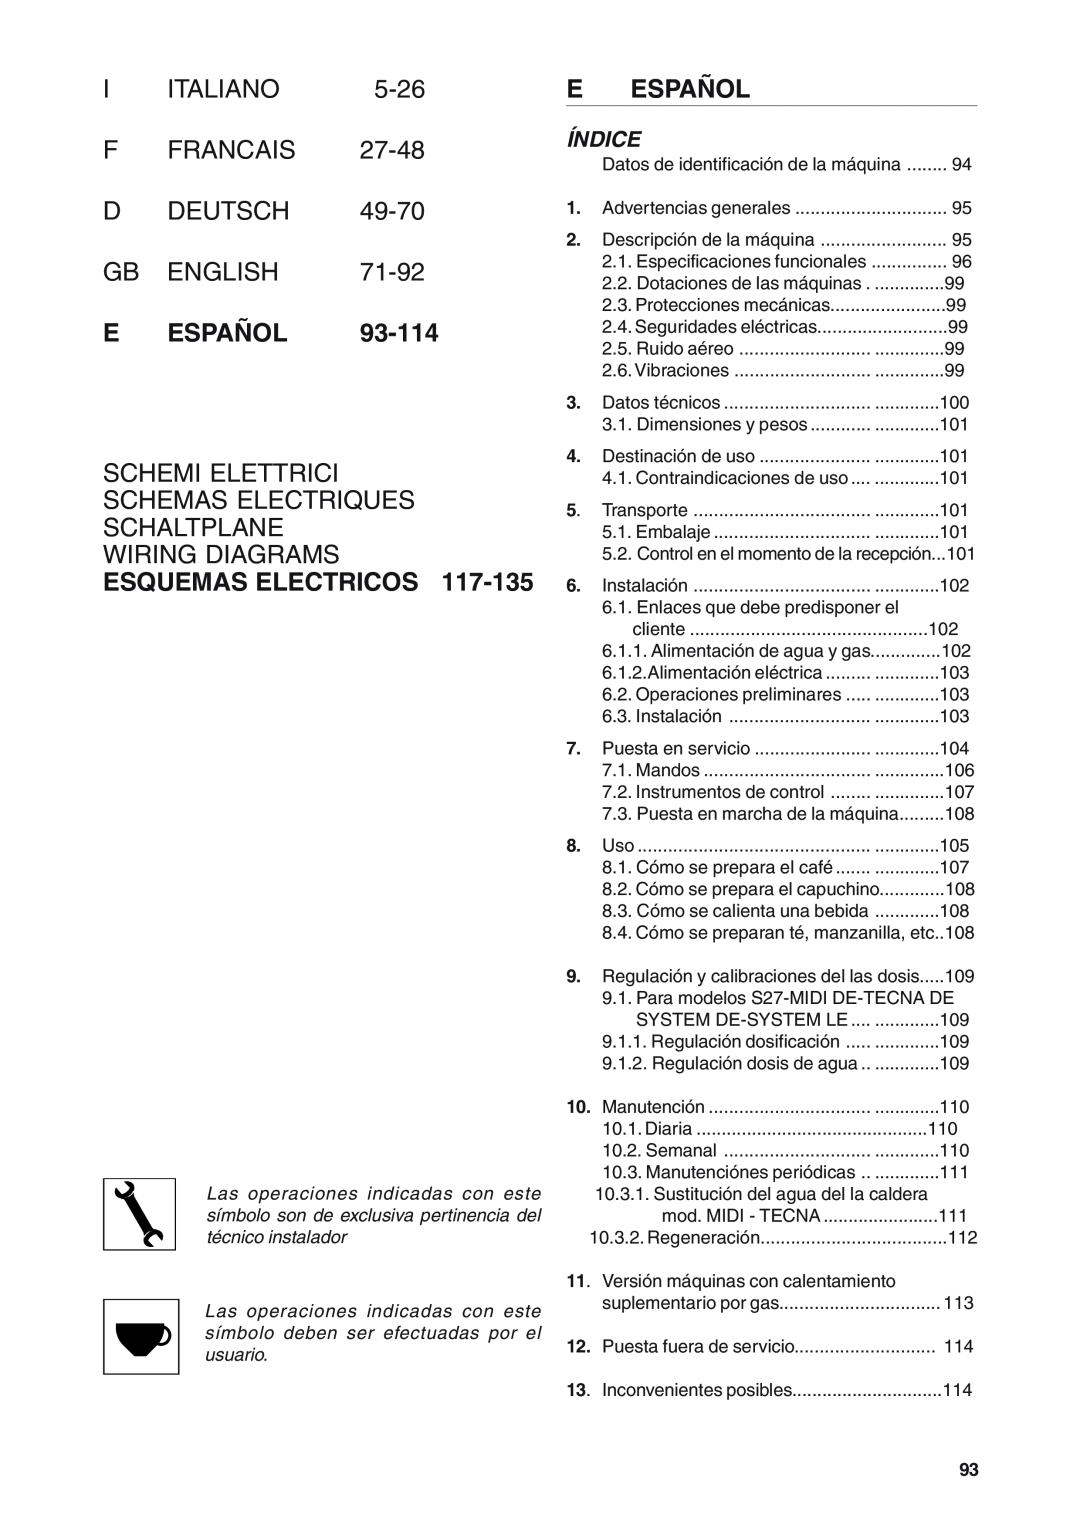 Rancilio S20 E Español, Schemi Elettrici Schemas Electriques Schaltplane Wiring Diagrams, Esquemas Electricos, Índice 